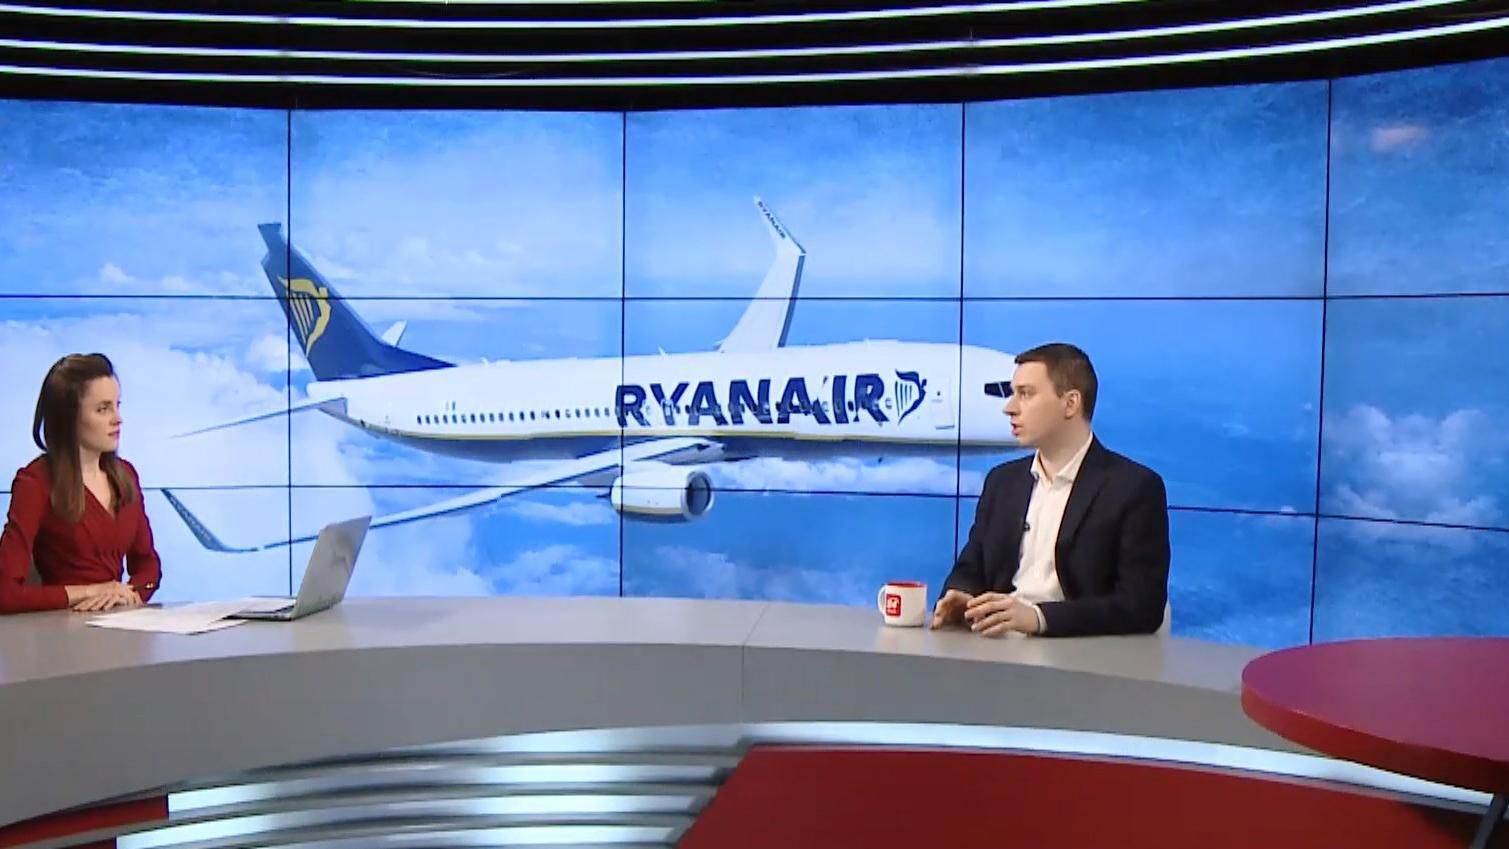 Все самолеты в компании Ryanair не старше 5 лет, – эксперт